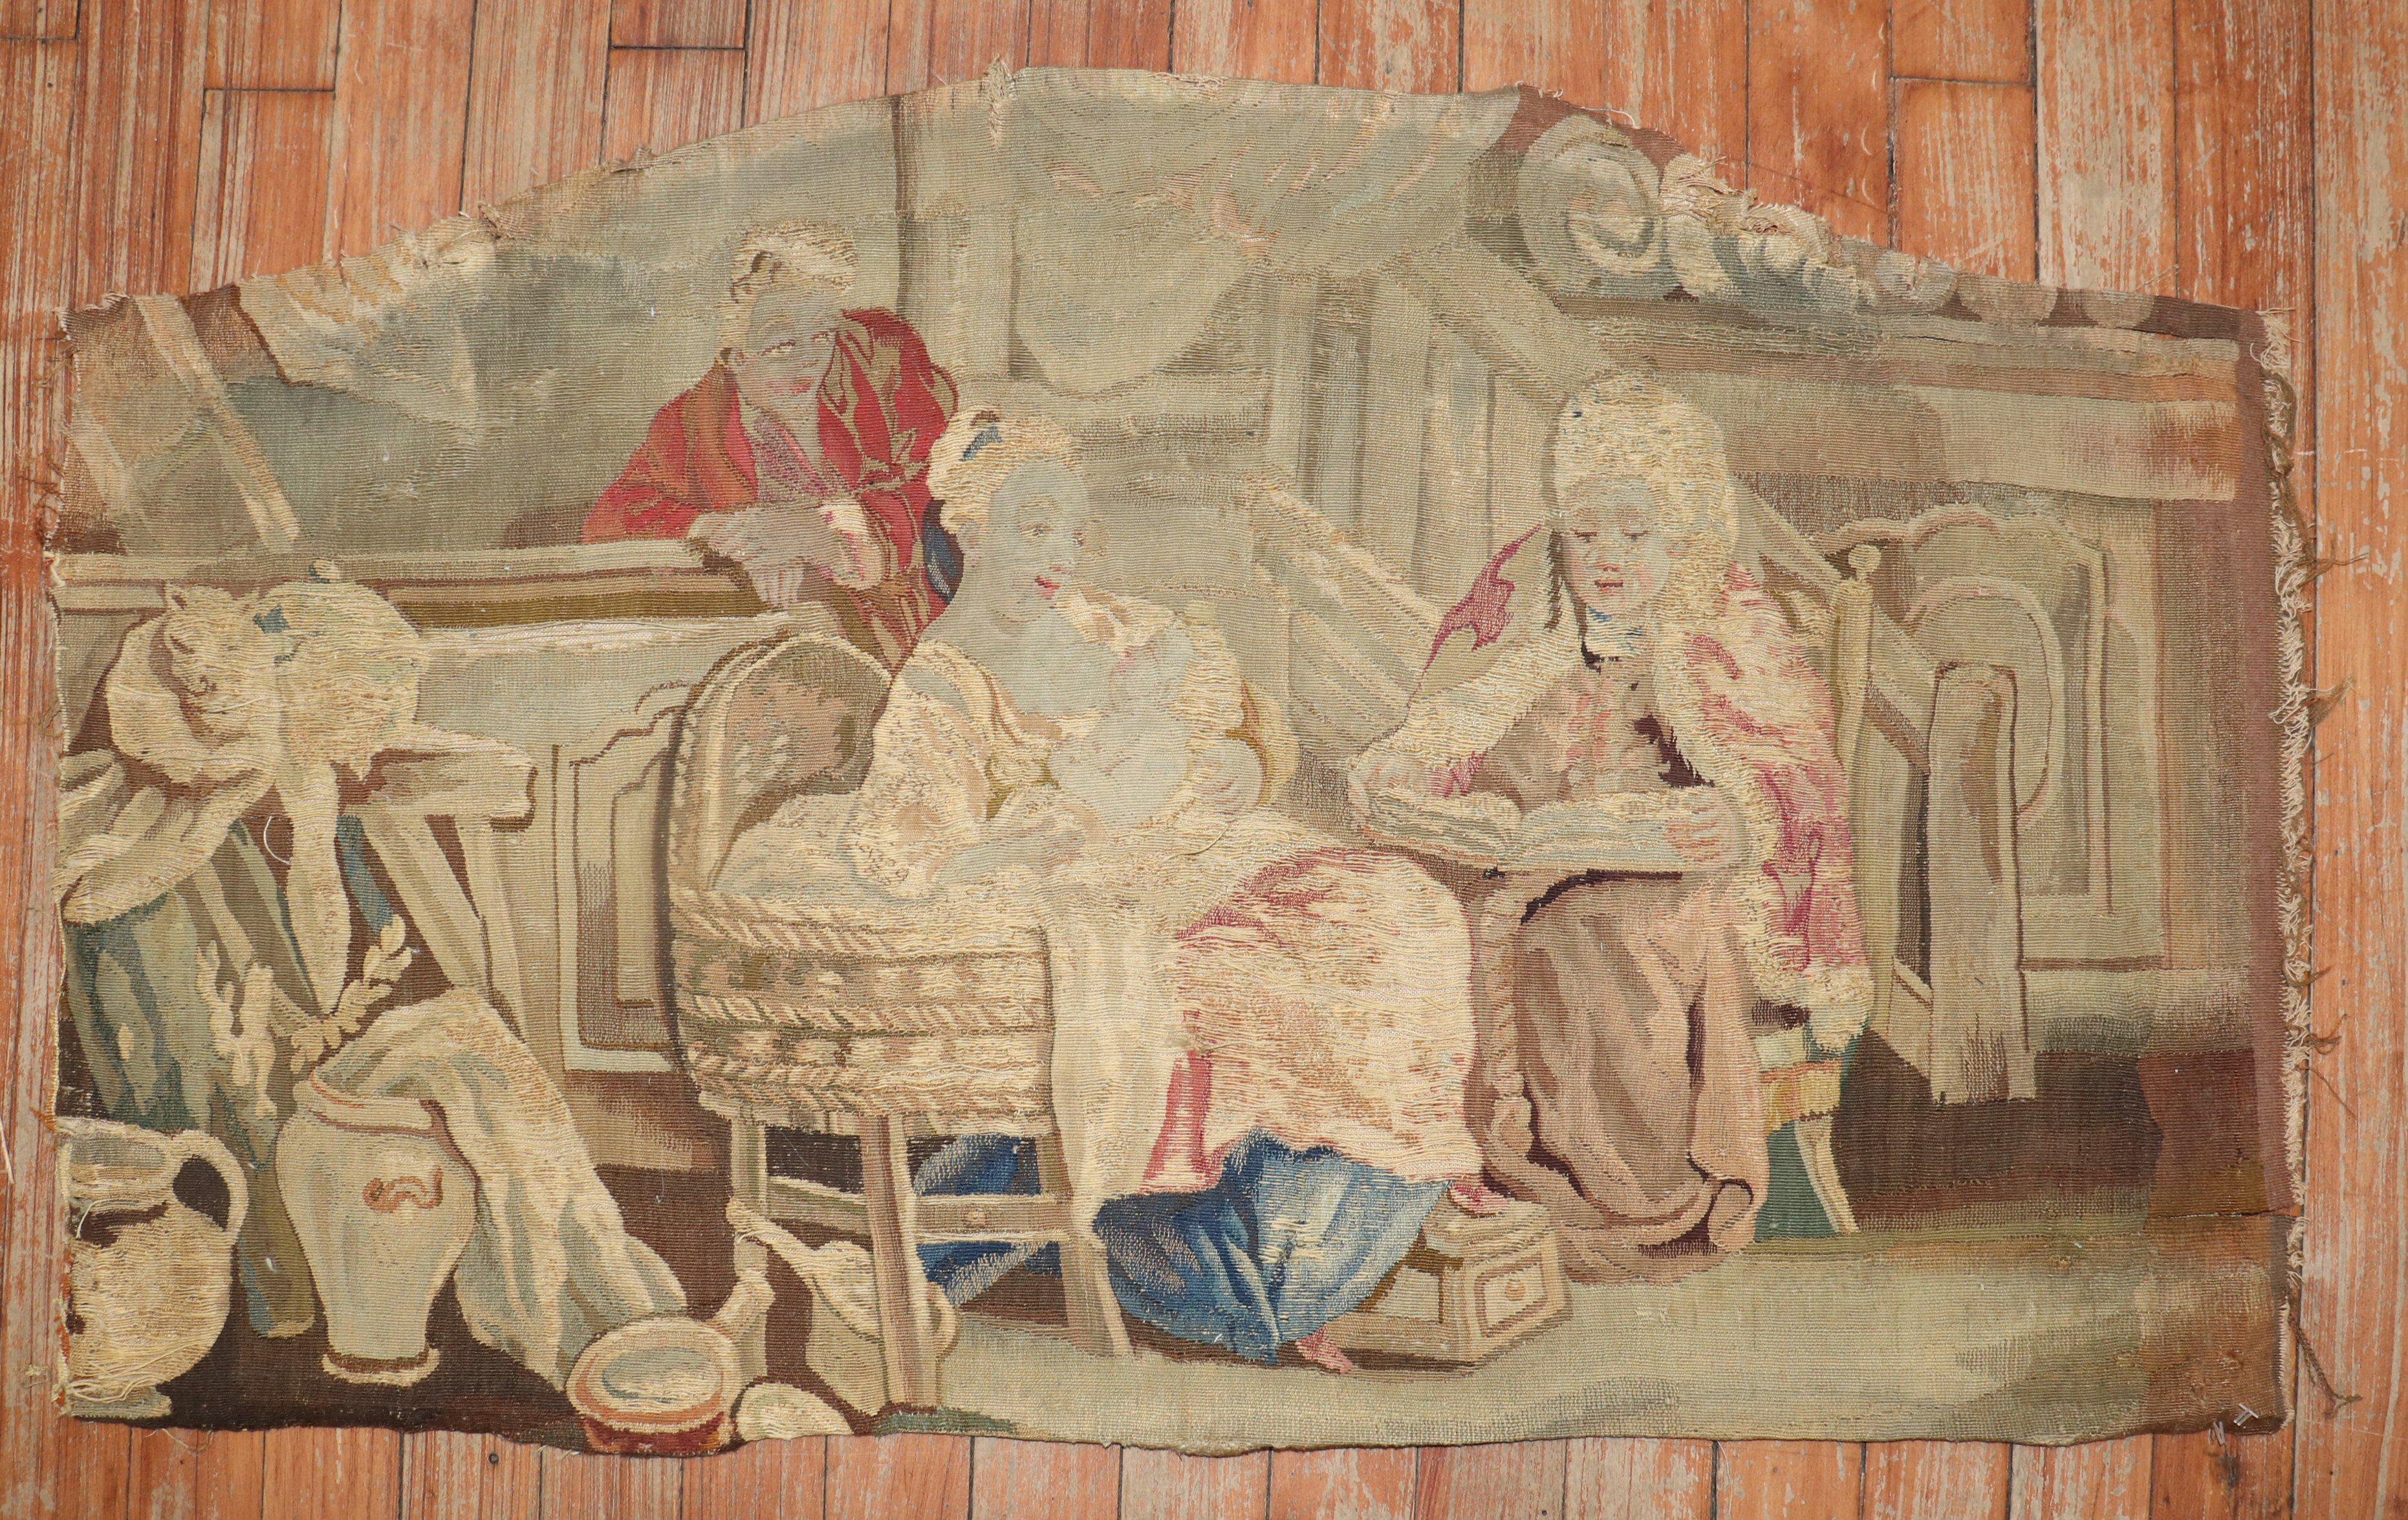 Fragment de tapisserie européenne du milieu du 18e siècle. 

Mesures : 1'9'' de large x 2'10'' de long.

Les tapisseries font partie intégrante du patrimoine culturel flamand. La plupart des tapisseries présentent des sujets religieux,